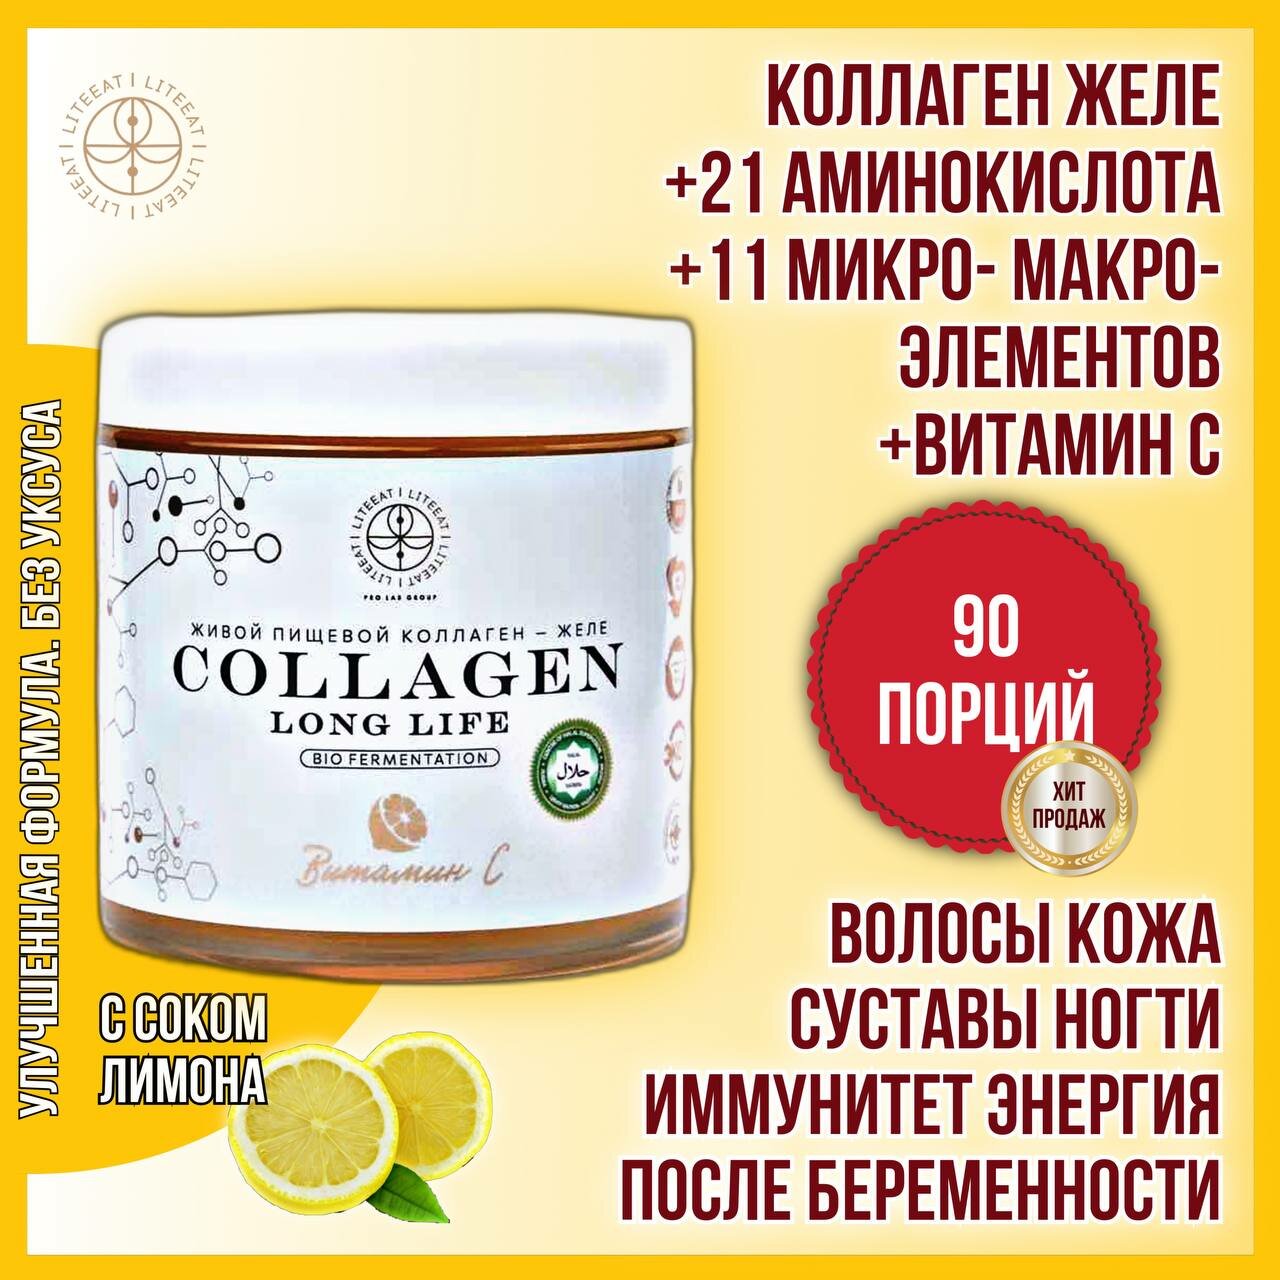 Пищевой Коллаген Халяль желе Long Life (2*500гр с витамином С)